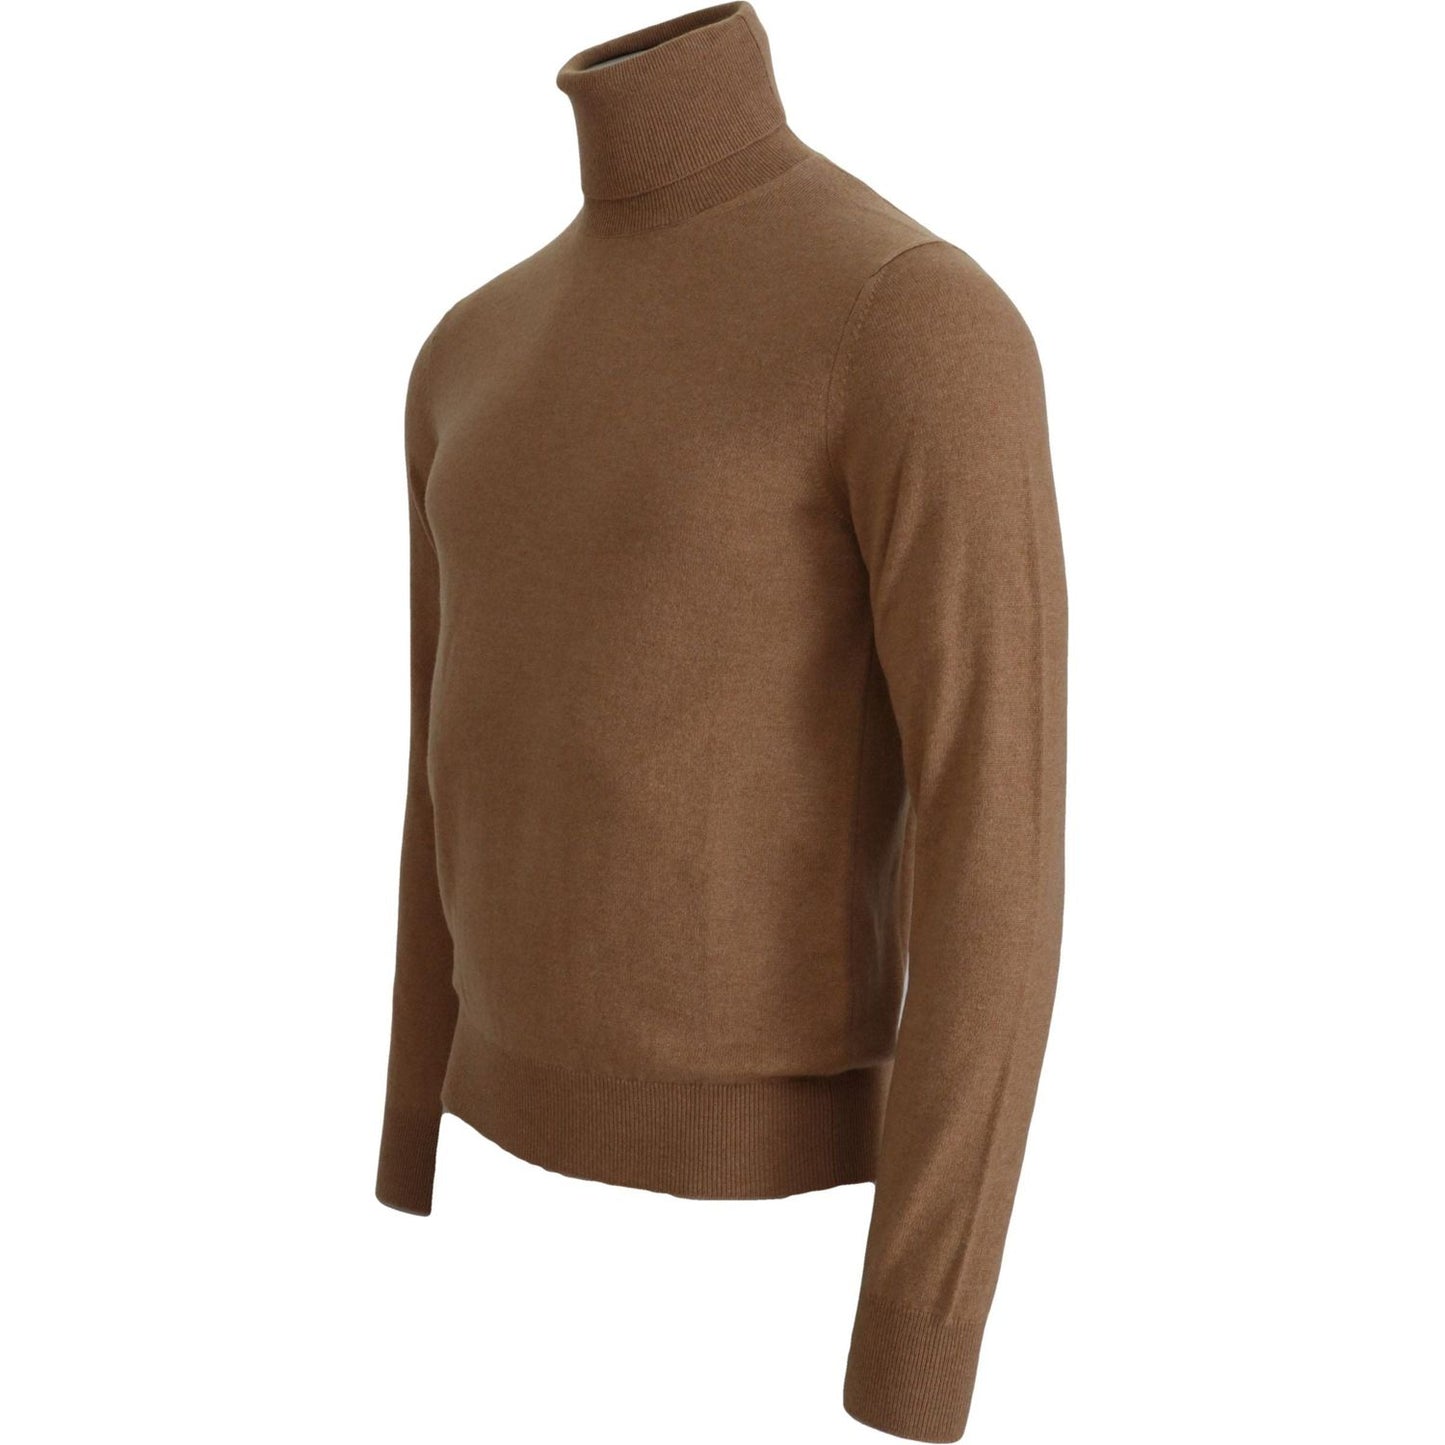 Dolce & Gabbana Beige Cashmere Turtleneck Pullover Sweater MAN SWEATERS beige-cashmere-turtleneck-pullover-sweater-1